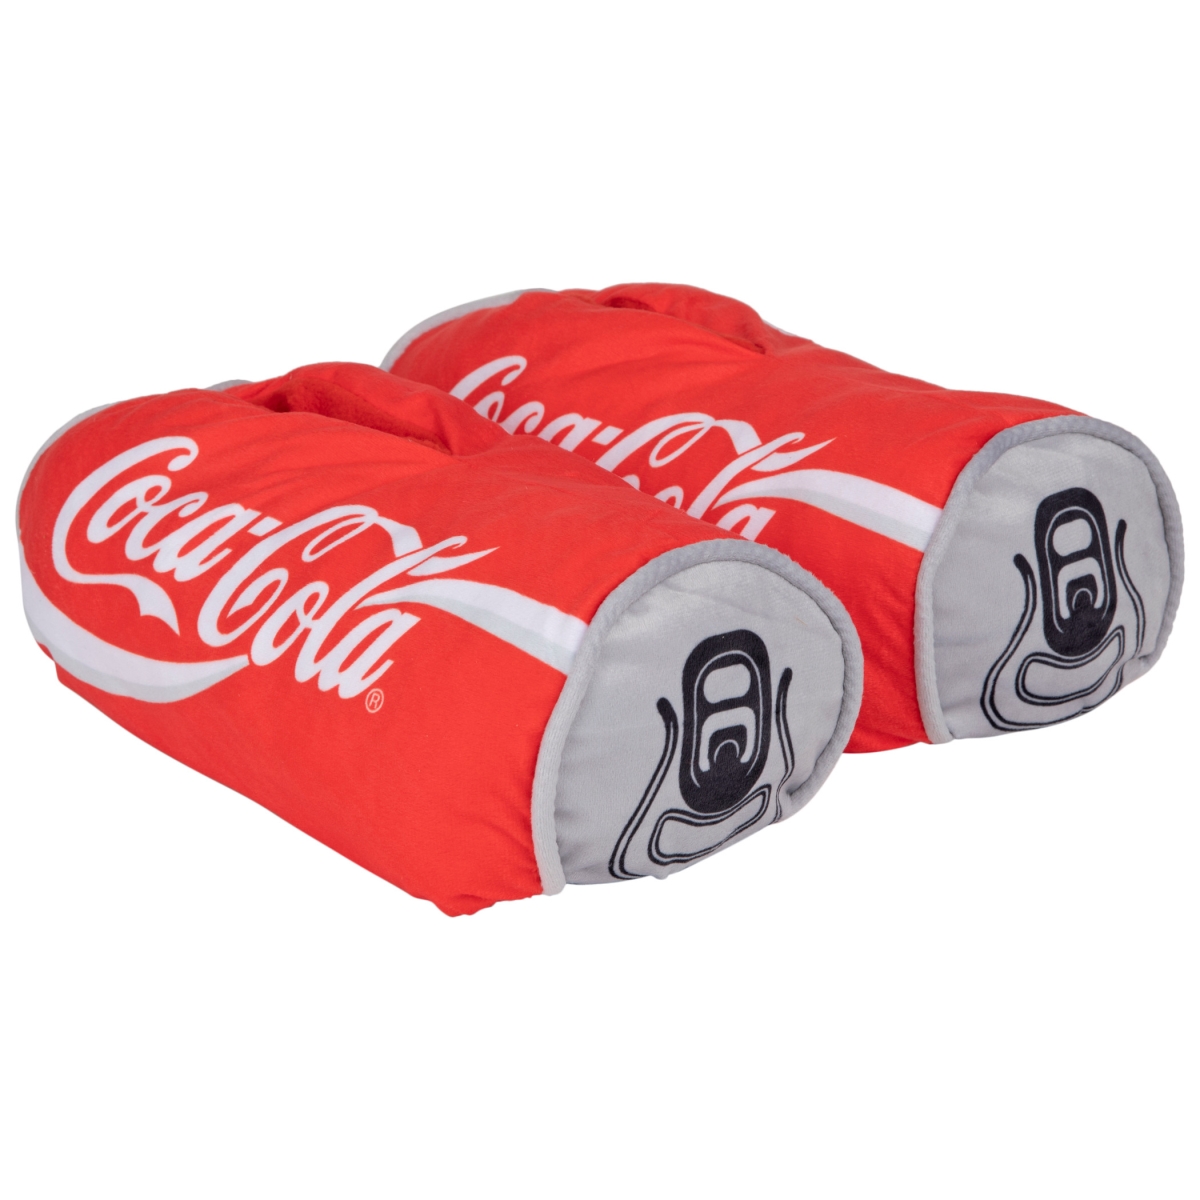 Picture of Coca-Cola 849053-ium-large Coca-Cola Classic Can Shaped Slippers - Medium & Large